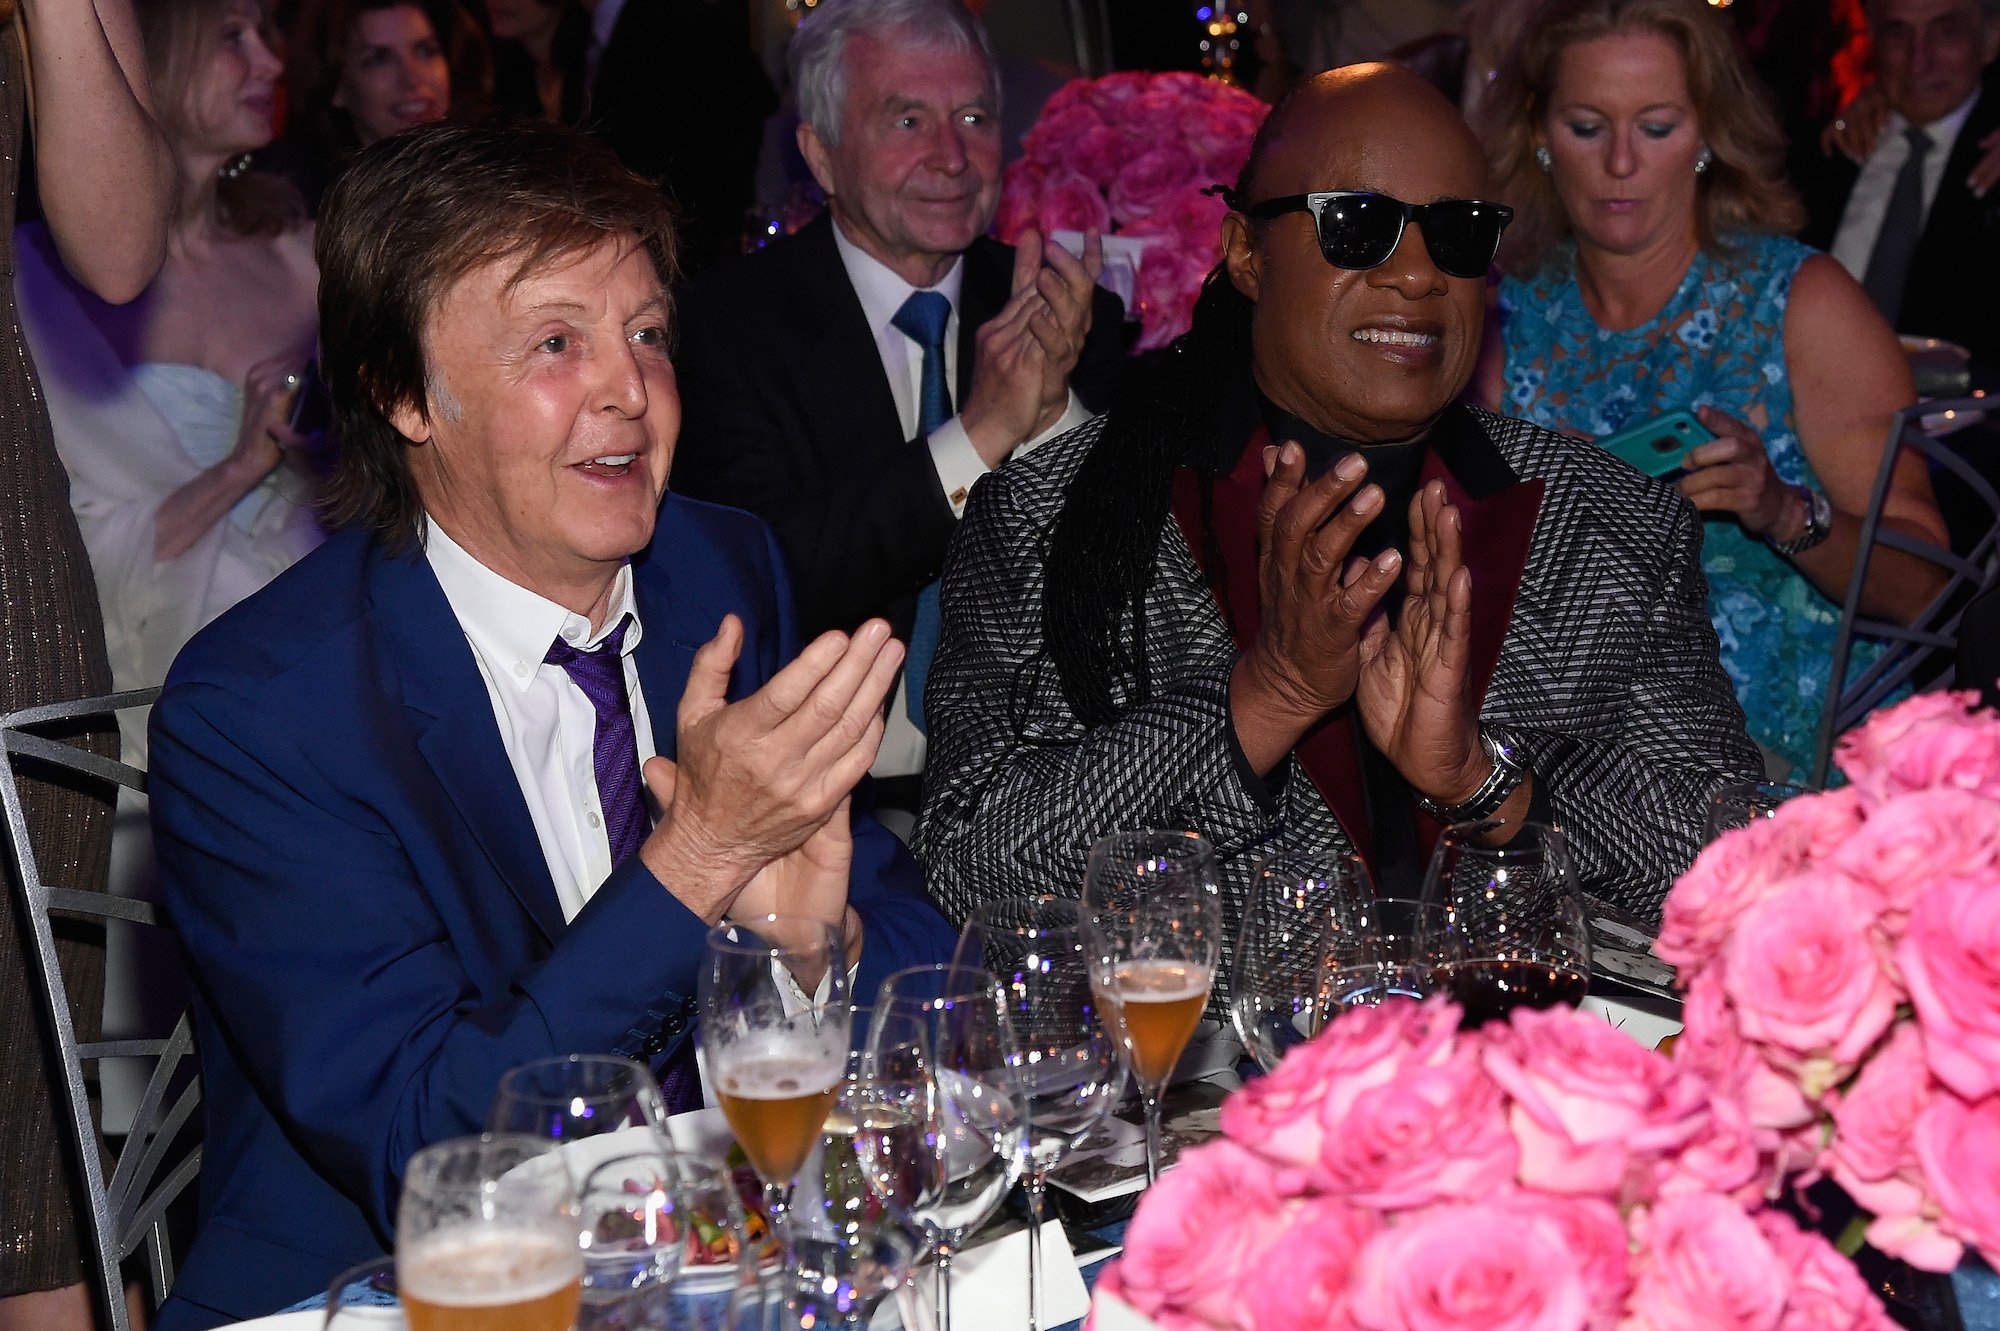 Paul McCartney and Stevie Wonder celebrate Tony Bennett's 90th birthday in New York City